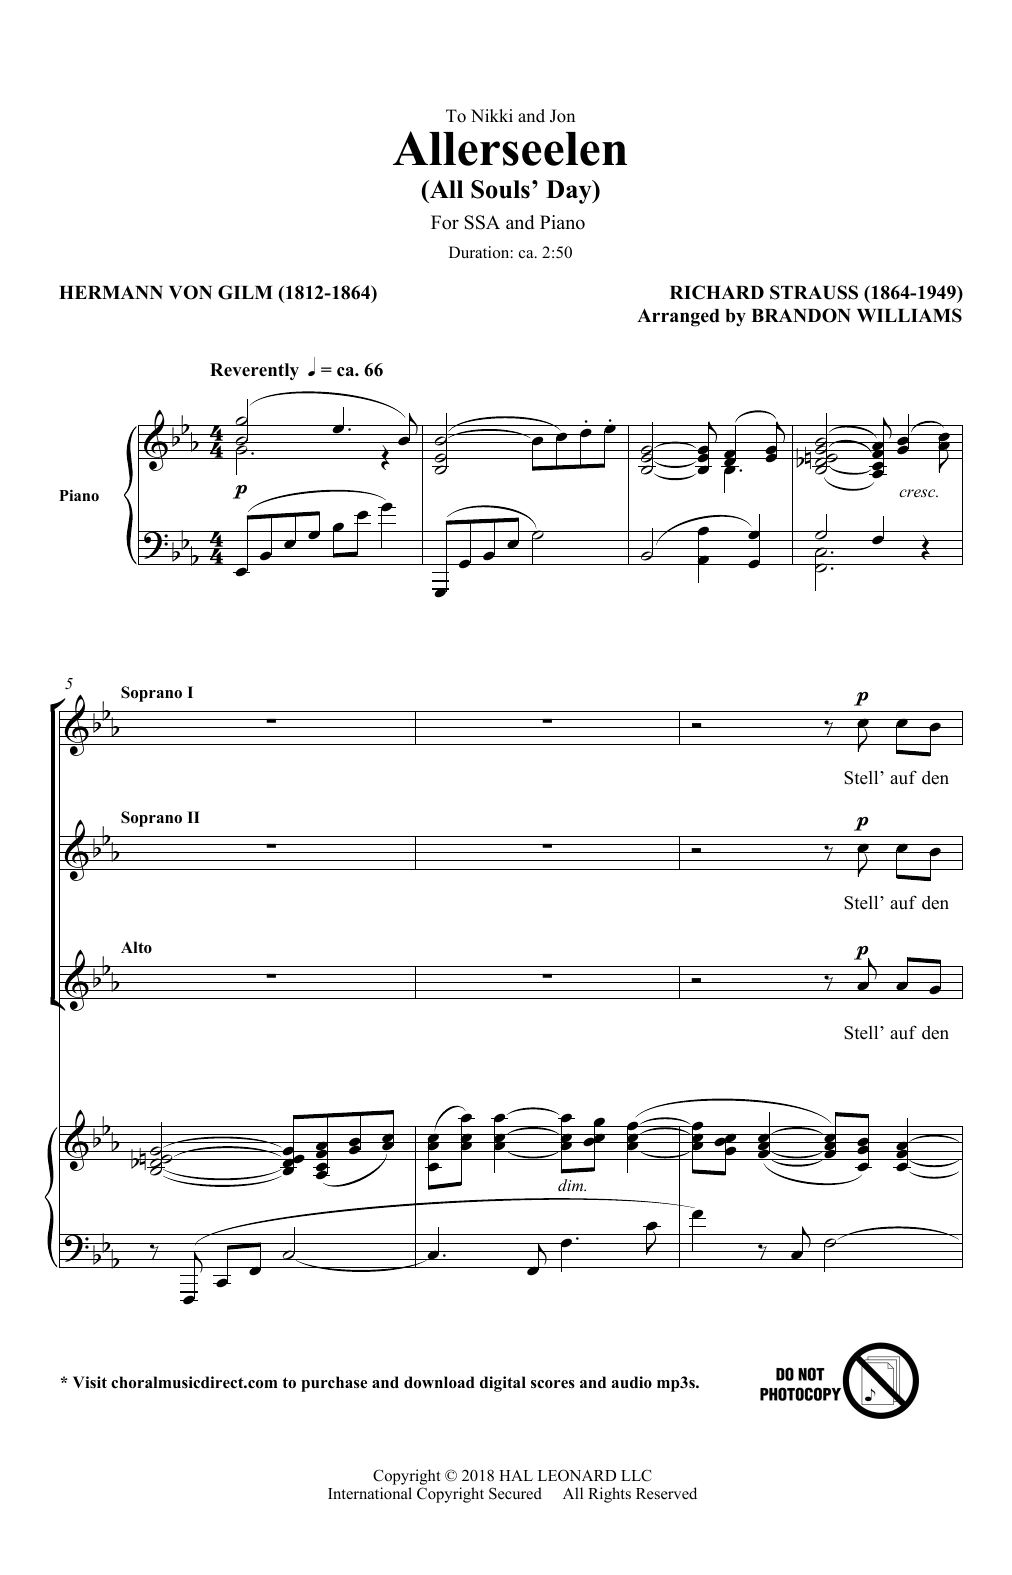 Download Richard Strauss & Hermann von Gilm Allerseelen (arr. Brandon Williams) Sheet Music